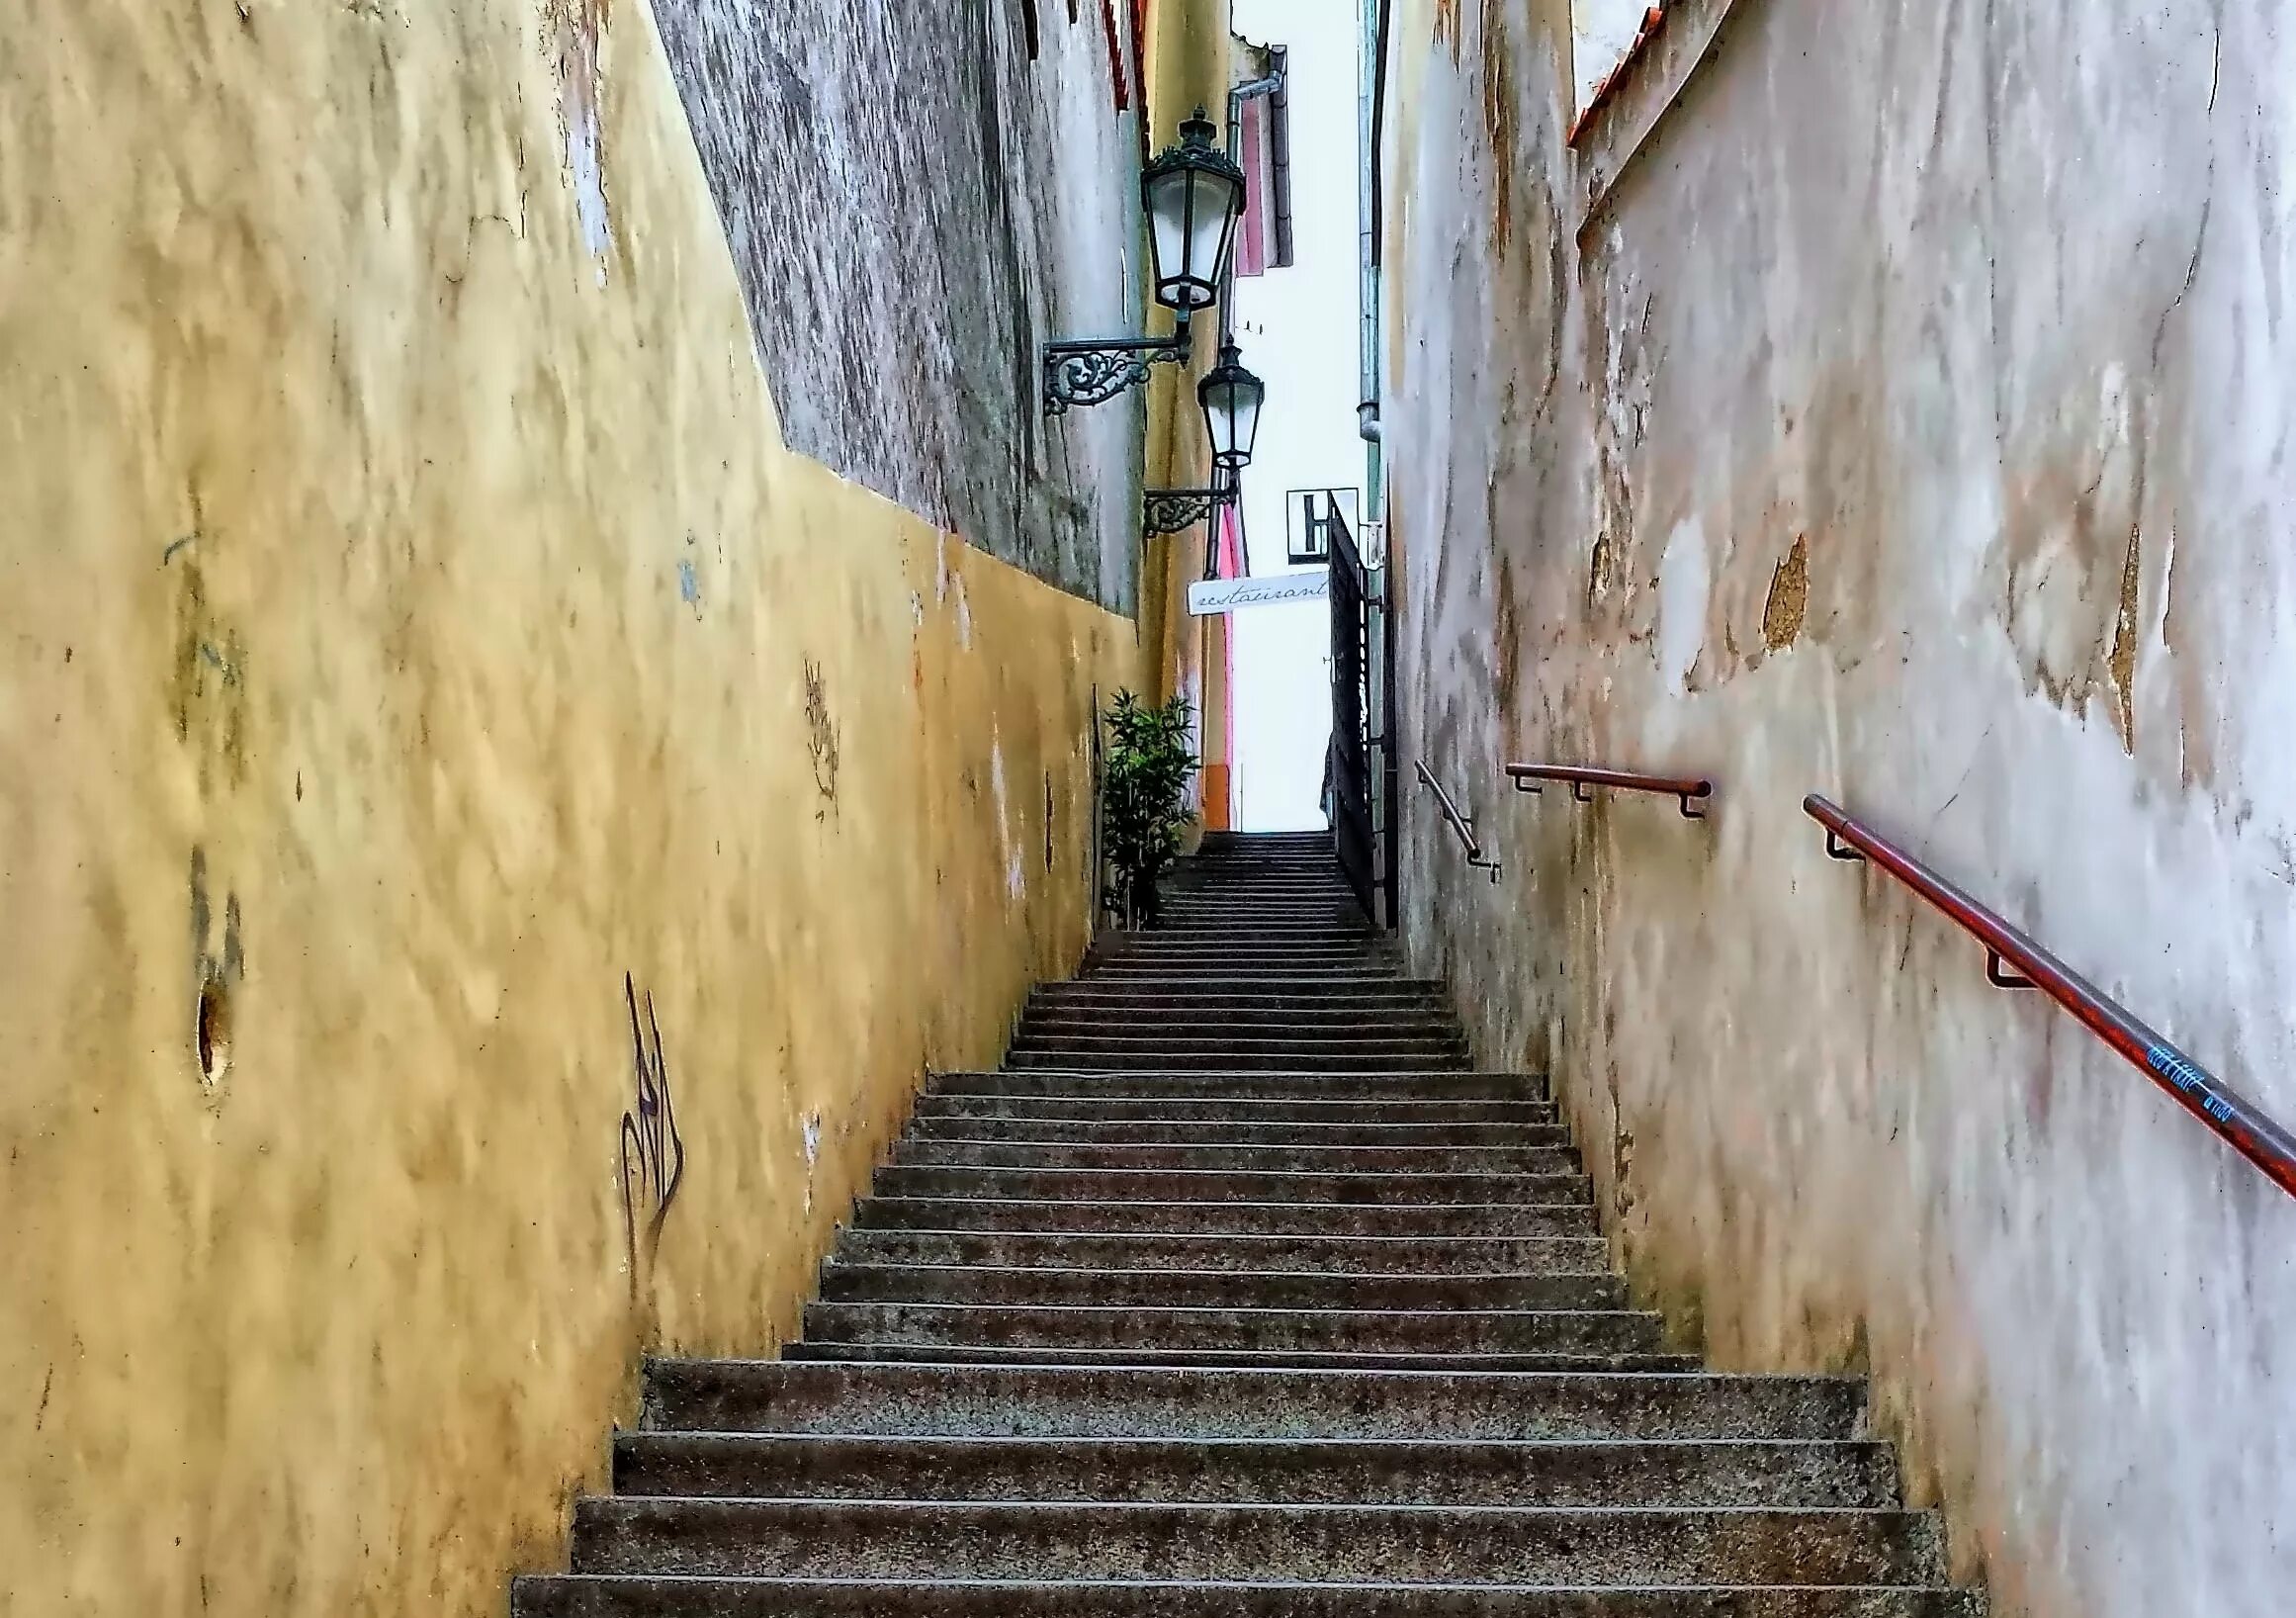 Дом на улице другой. Лестница в переулке. Лестницы в переулках между домами. Переулки Праги. Старые ступени переулок.